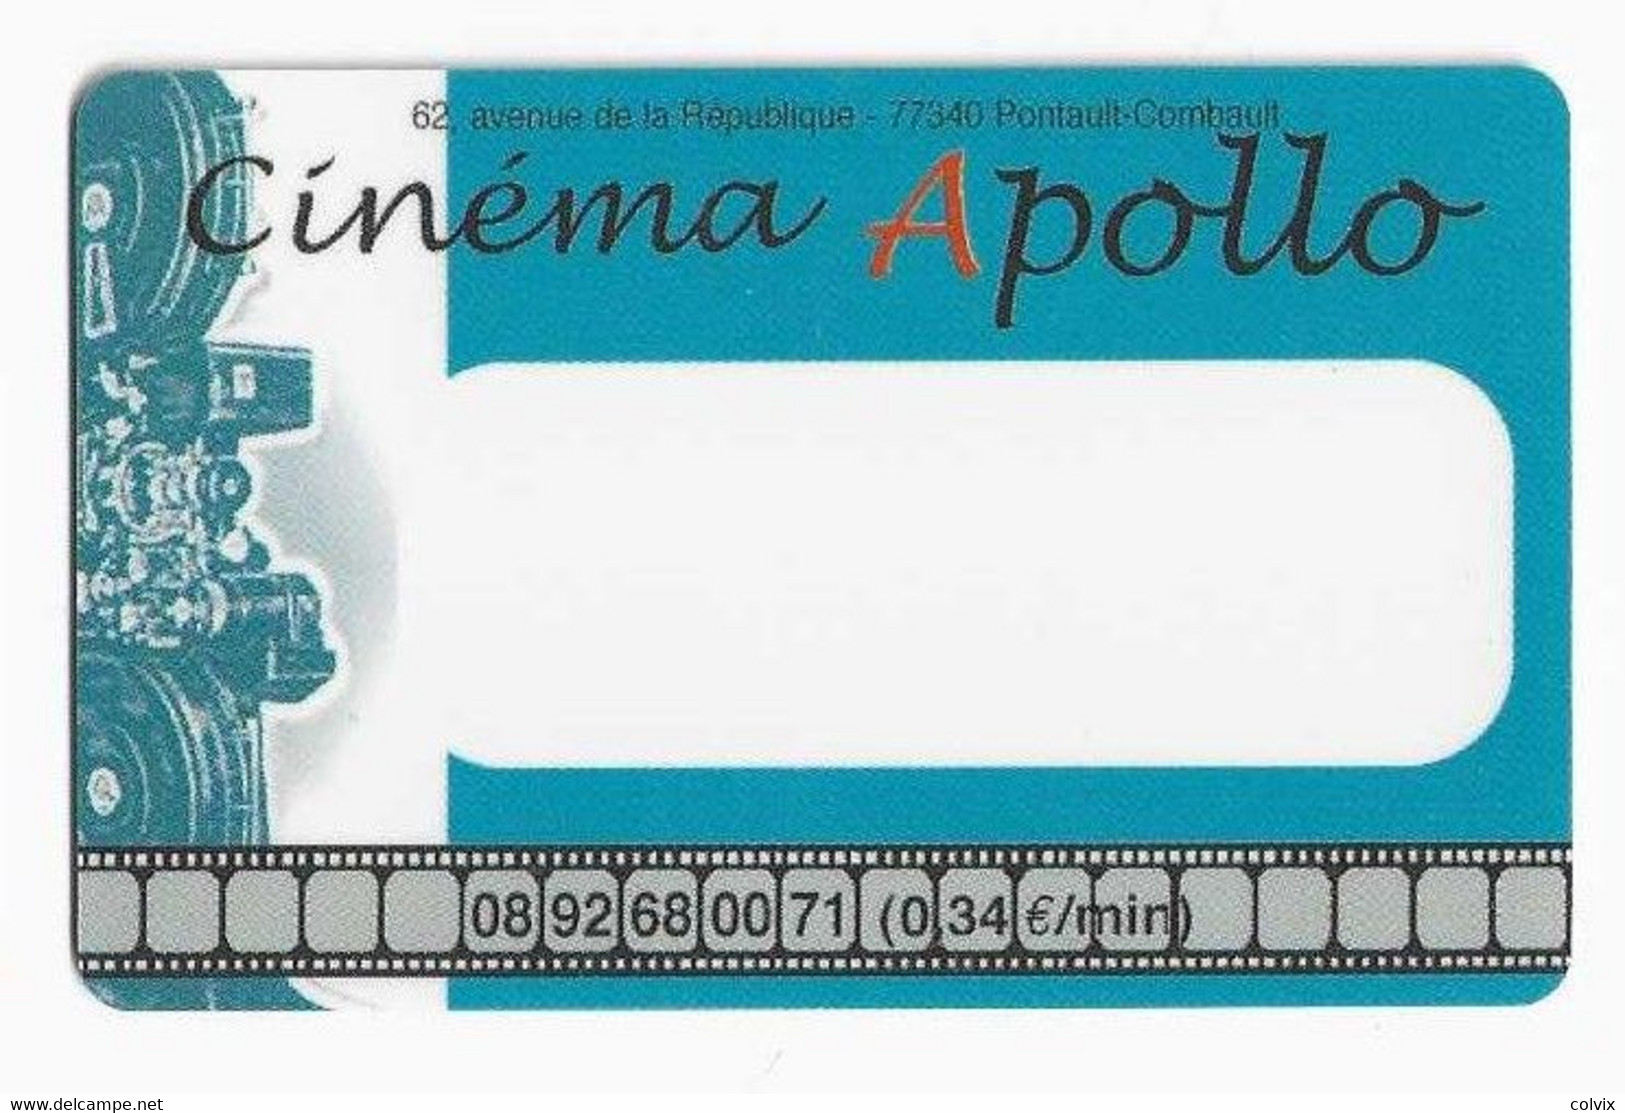 FRANCE CARTE CINEMA APOLLO PONTAULT COMBAULT - Entradas De Cine